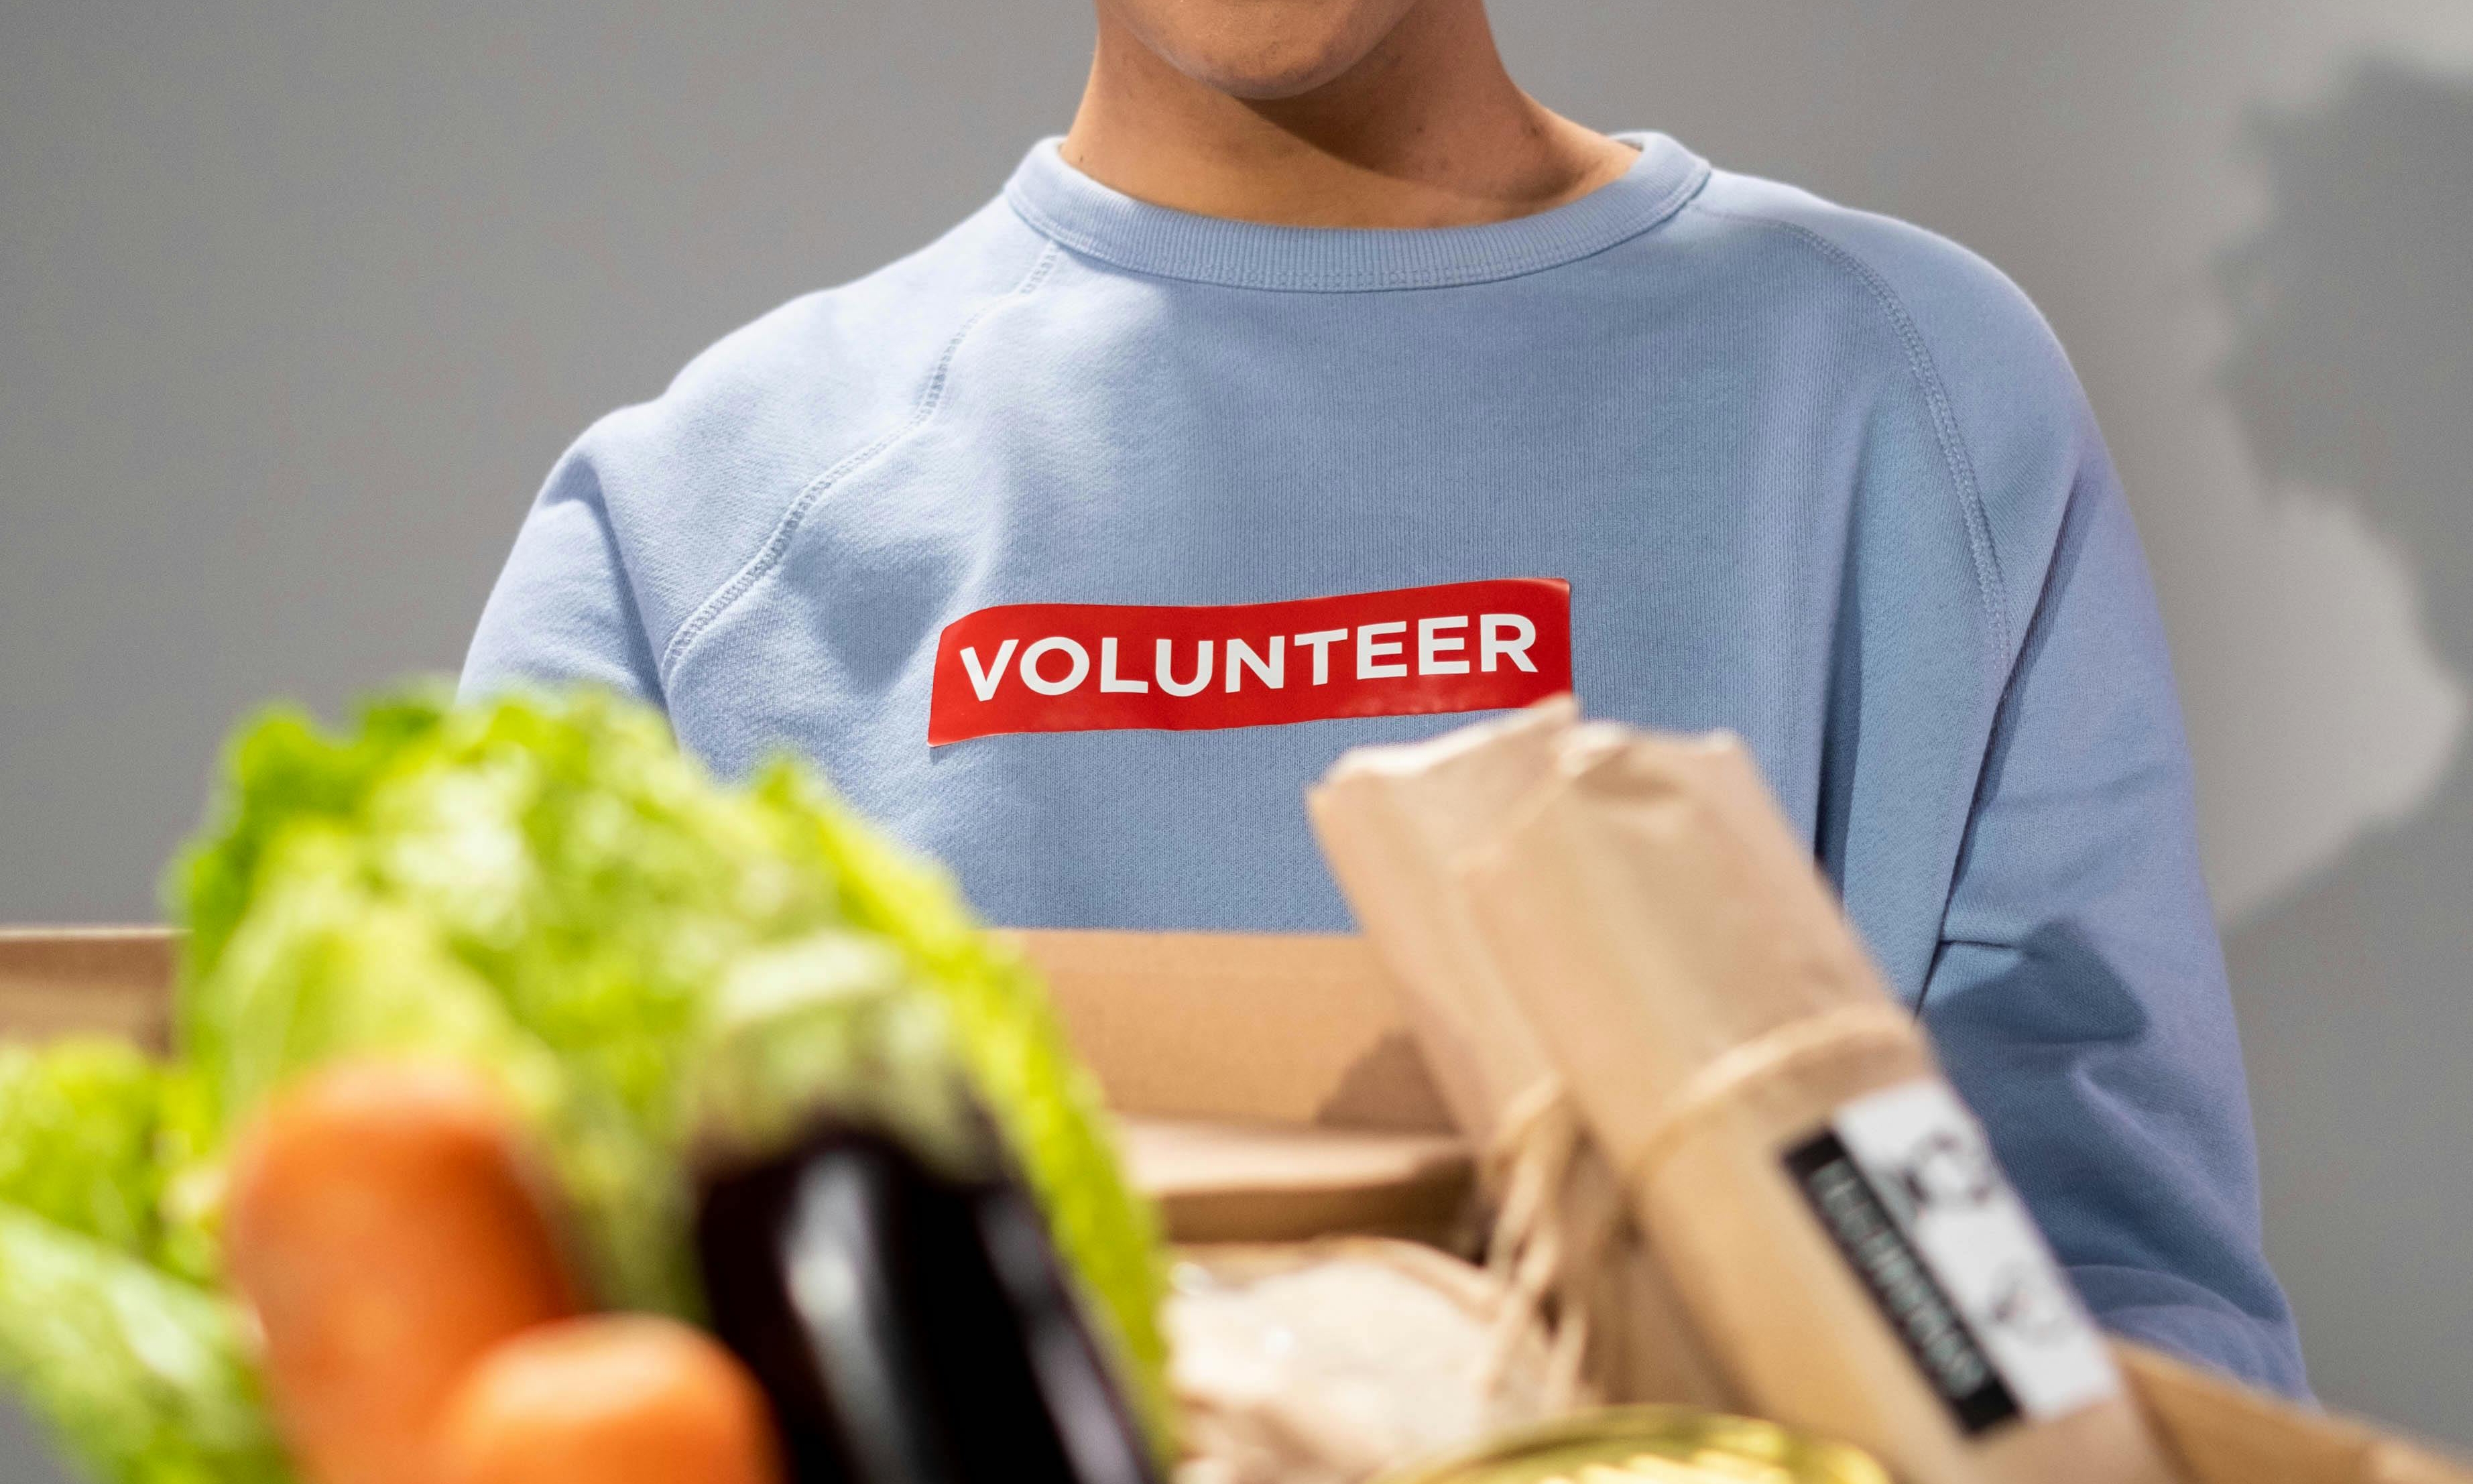 Una mujer con una camiseta estampada de "voluntaria" sosteniendo un paquete de comida | Fuente: Pexels